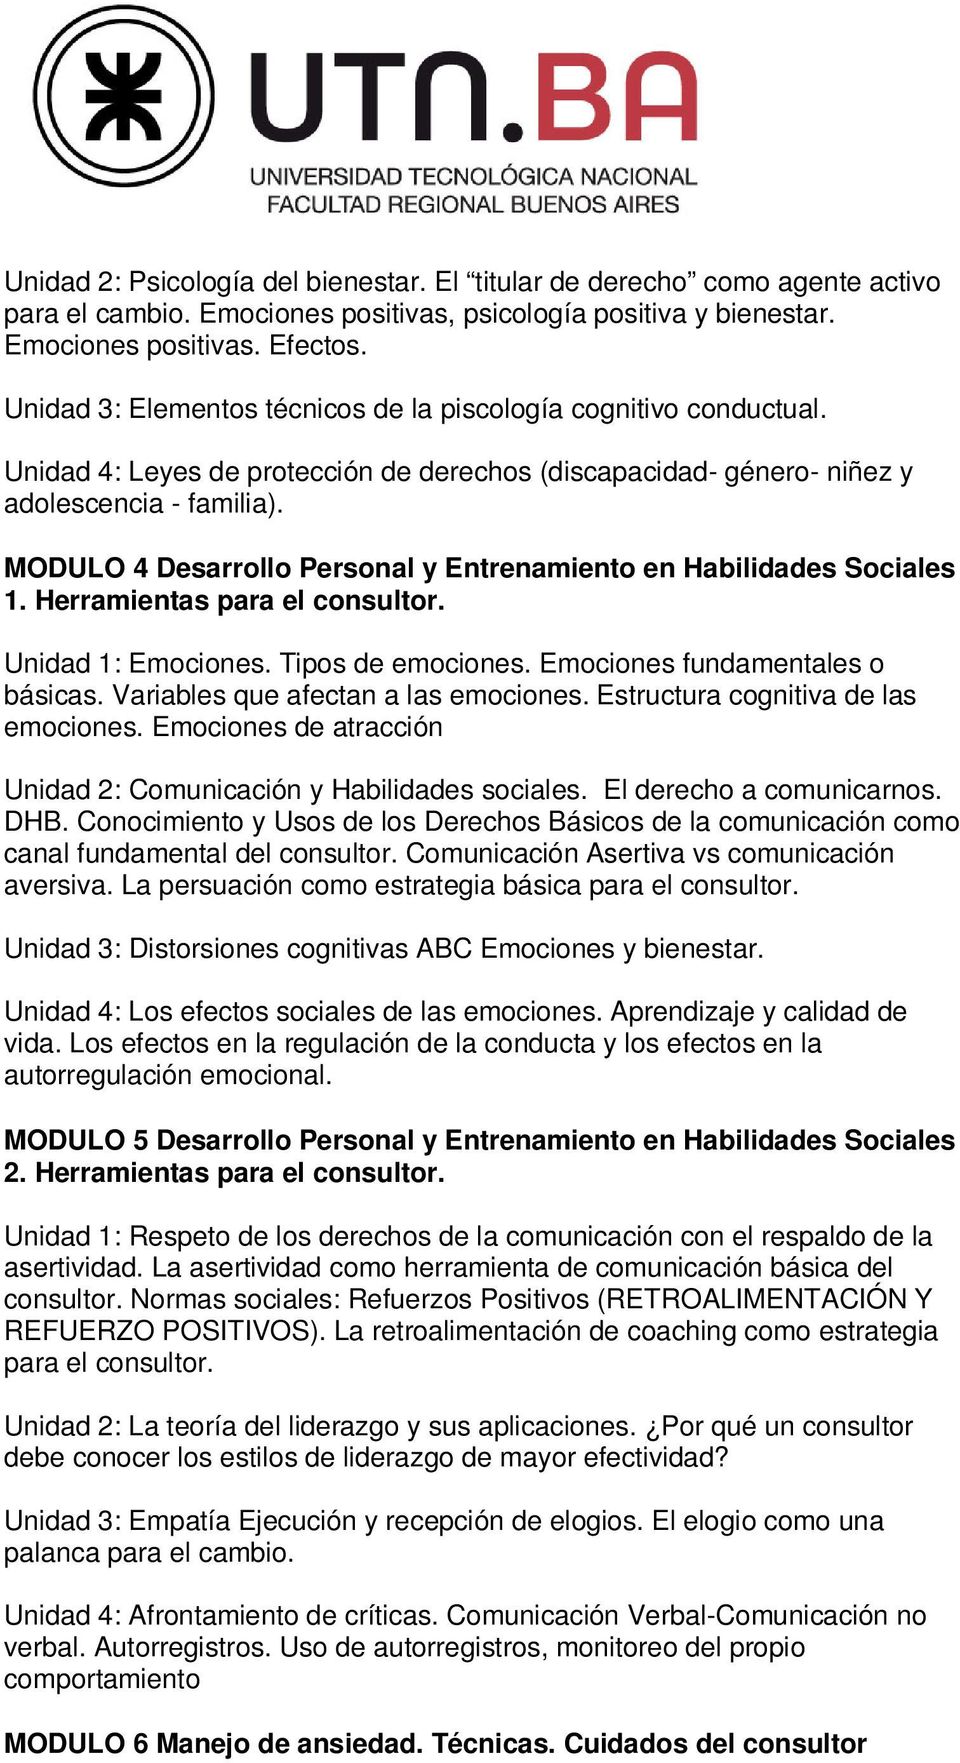 MODULO 4 Desarrollo Personal y Entrenamiento en Habilidades Sociales 1. Herramientas para el consultor. Unidad 1: Emociones. Tipos de emociones. Emociones fundamentales o básicas.